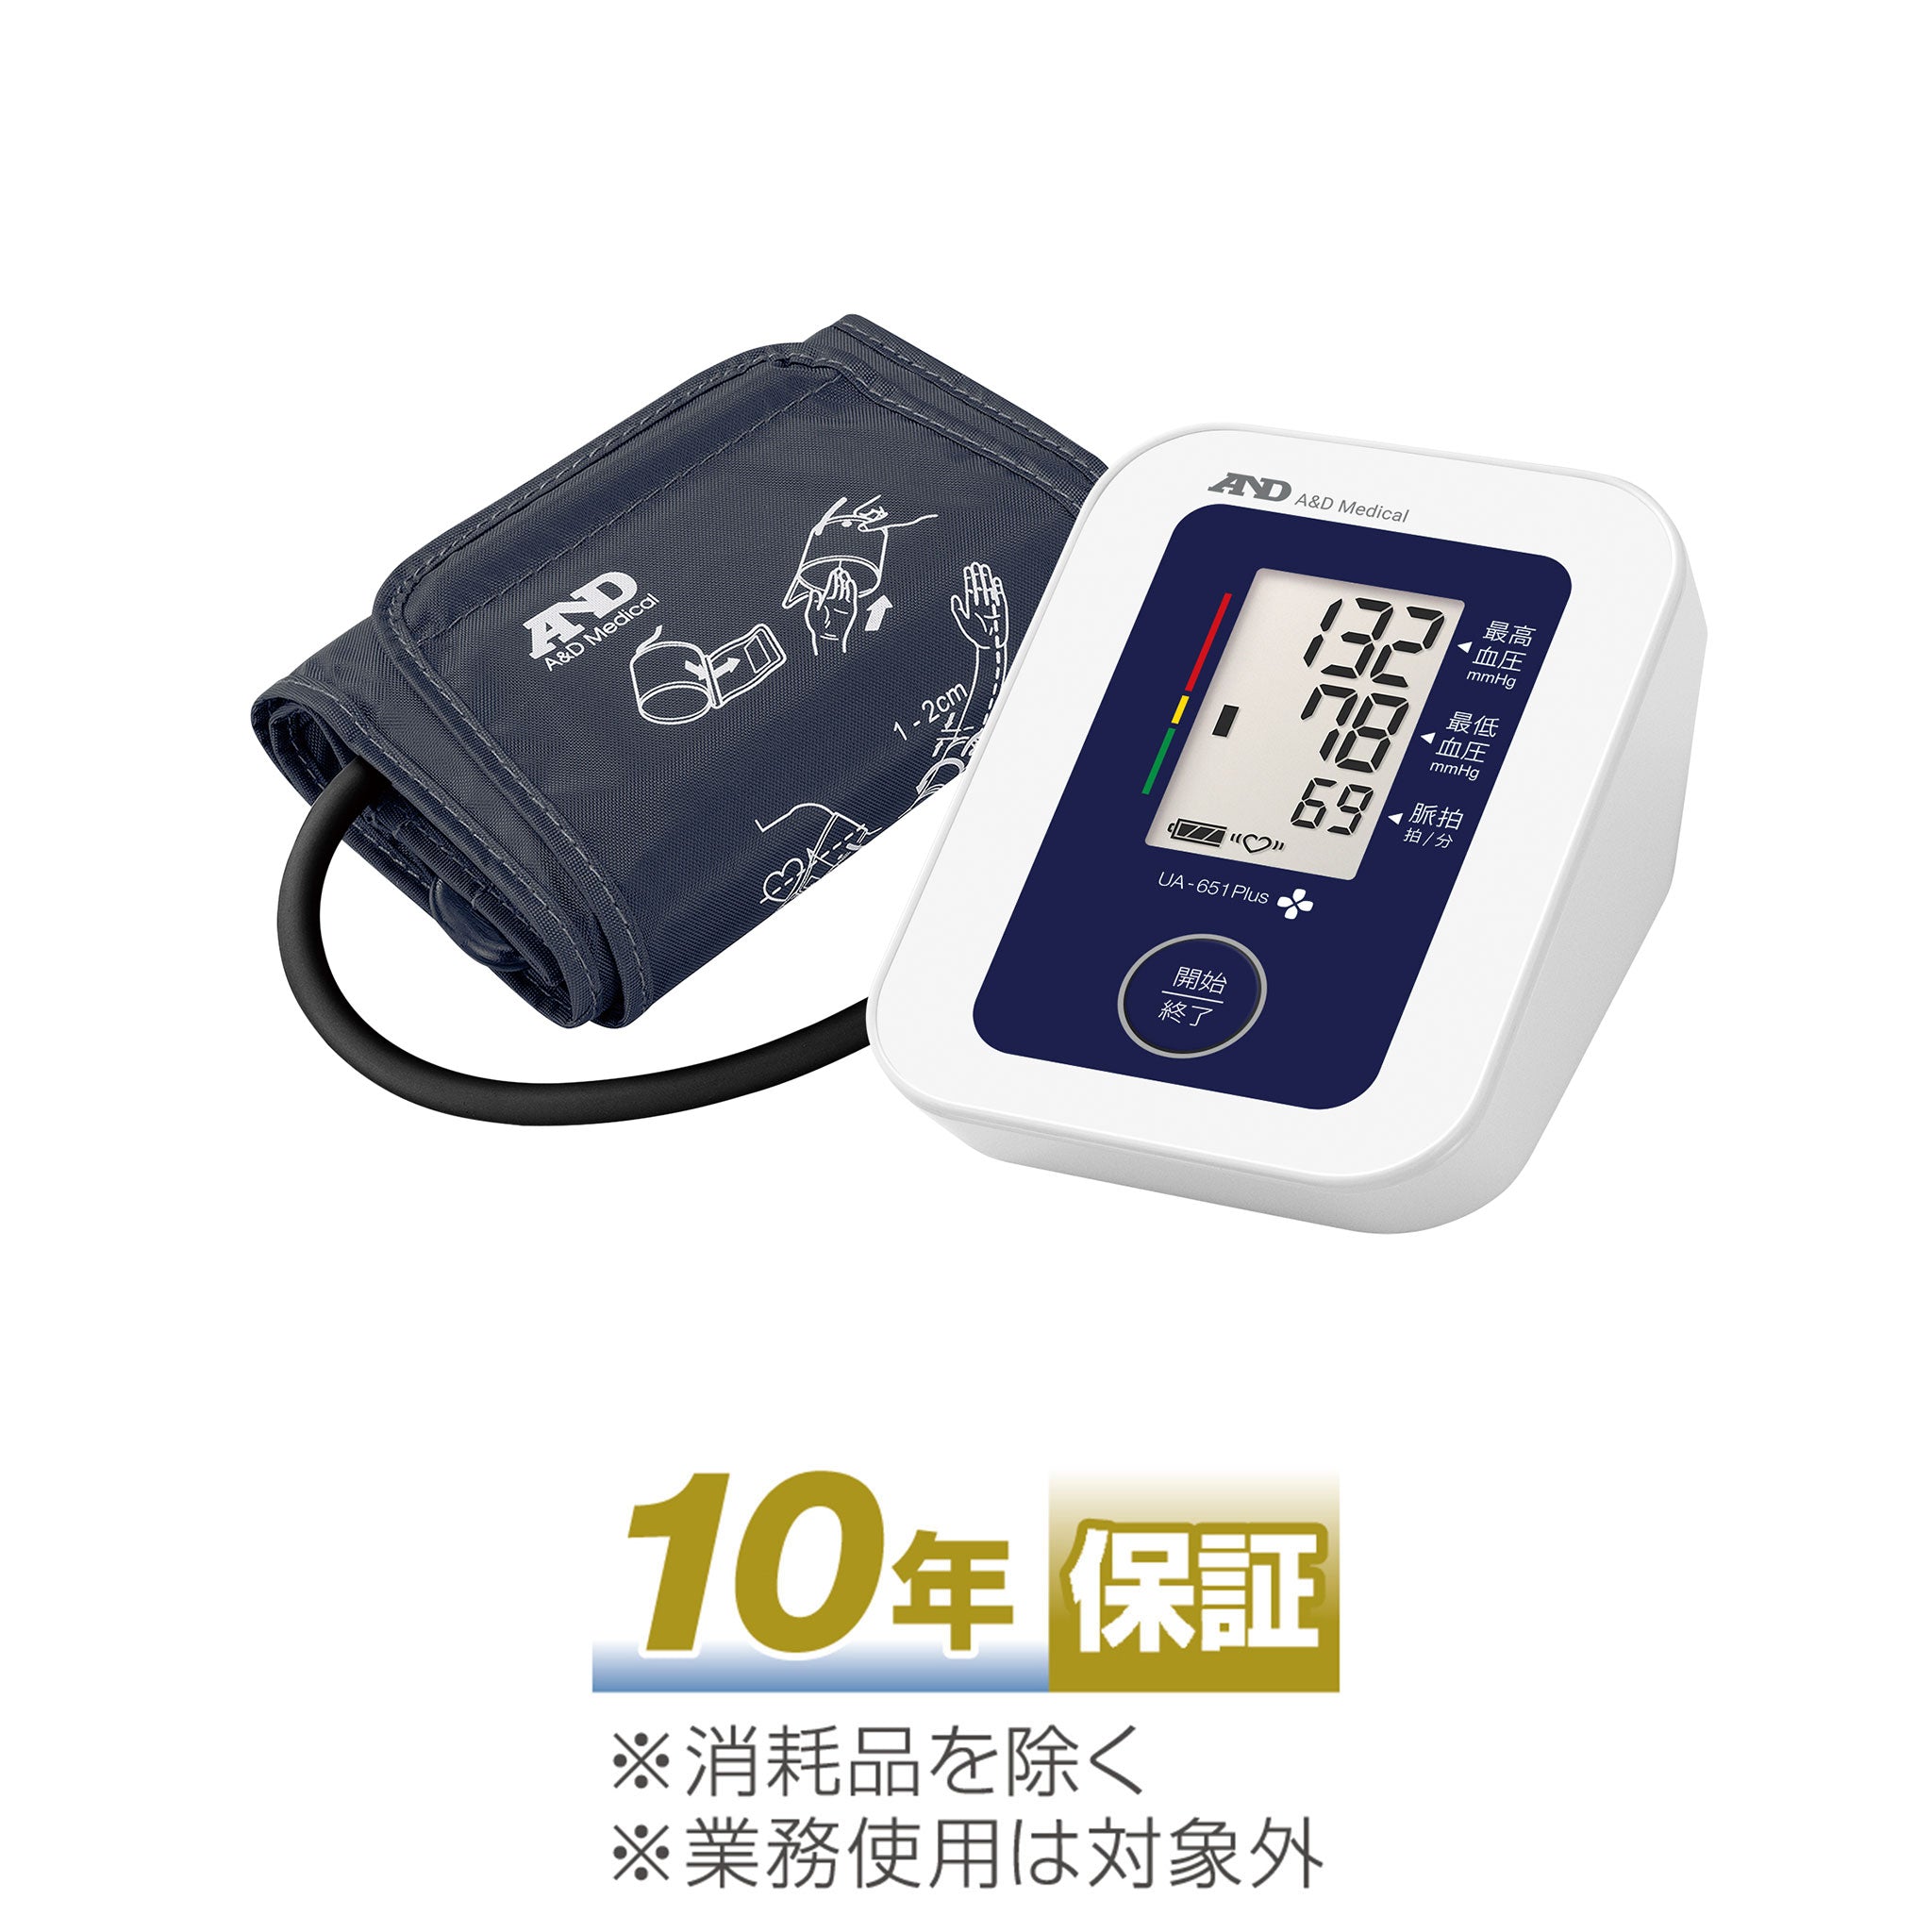 □A&D エーアンドデイ デジタル血圧計 UA-651PLUS